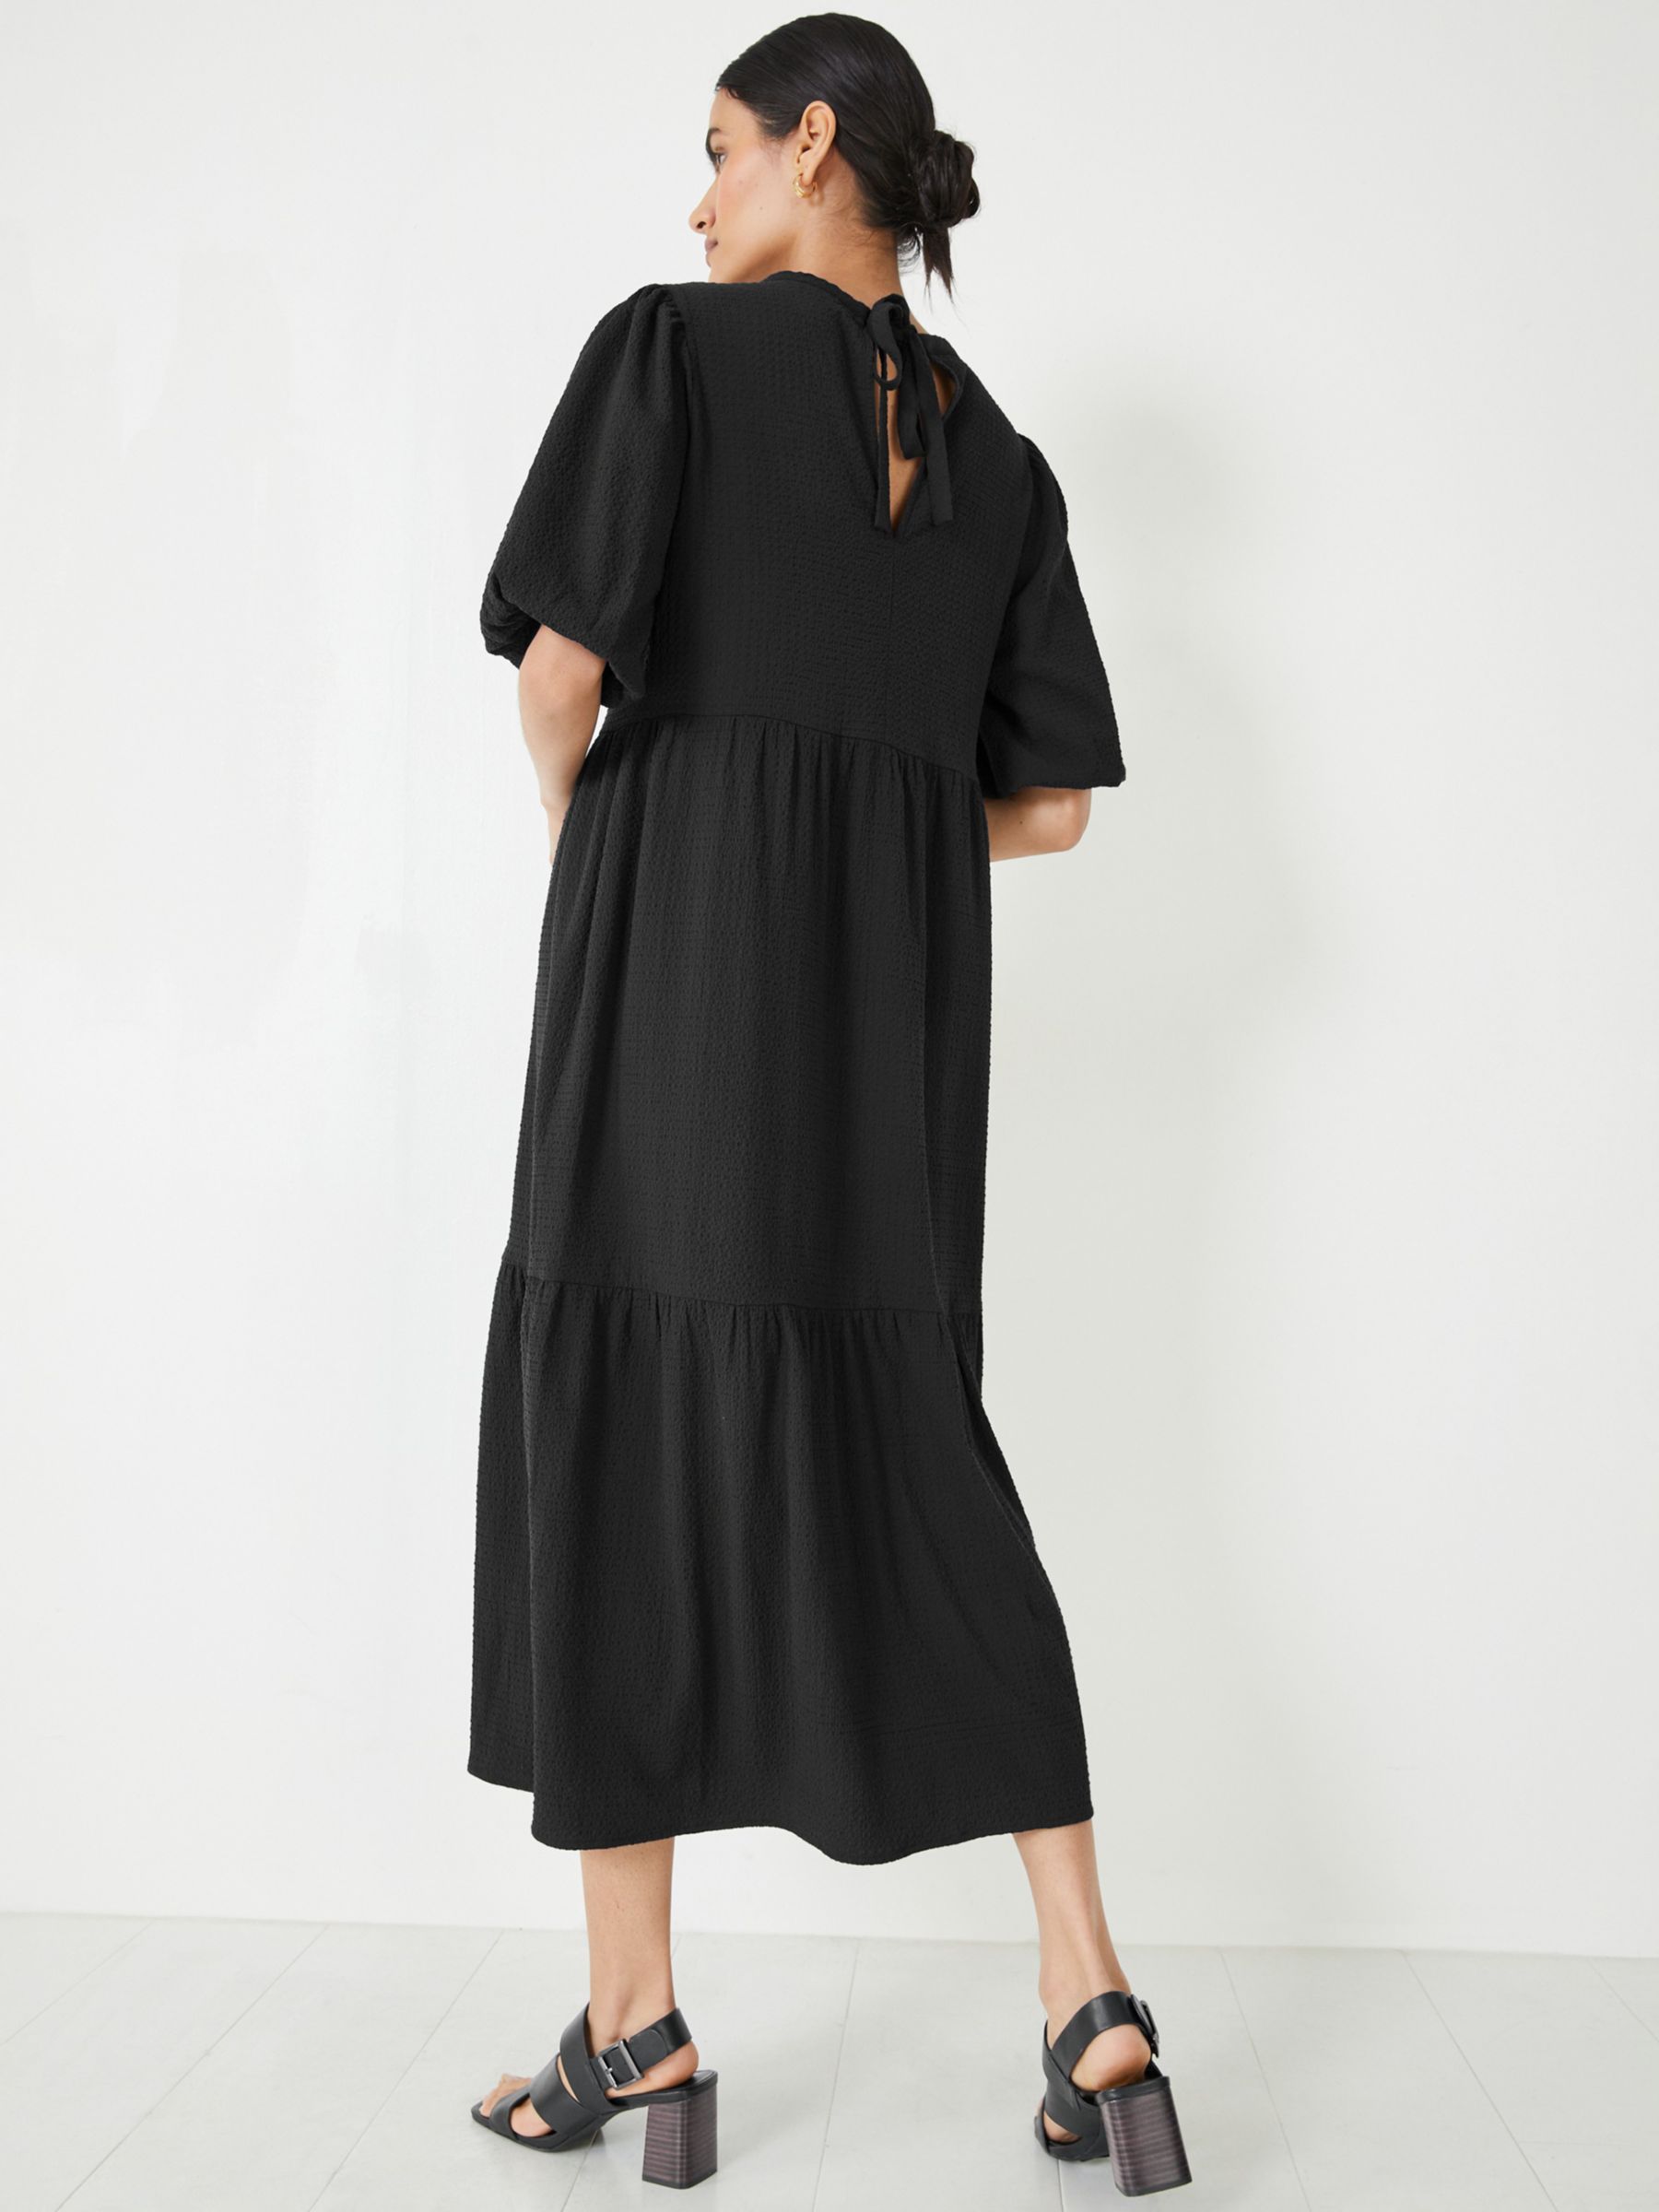 hush Kiana Midi Dress, Black at John Lewis & Partners